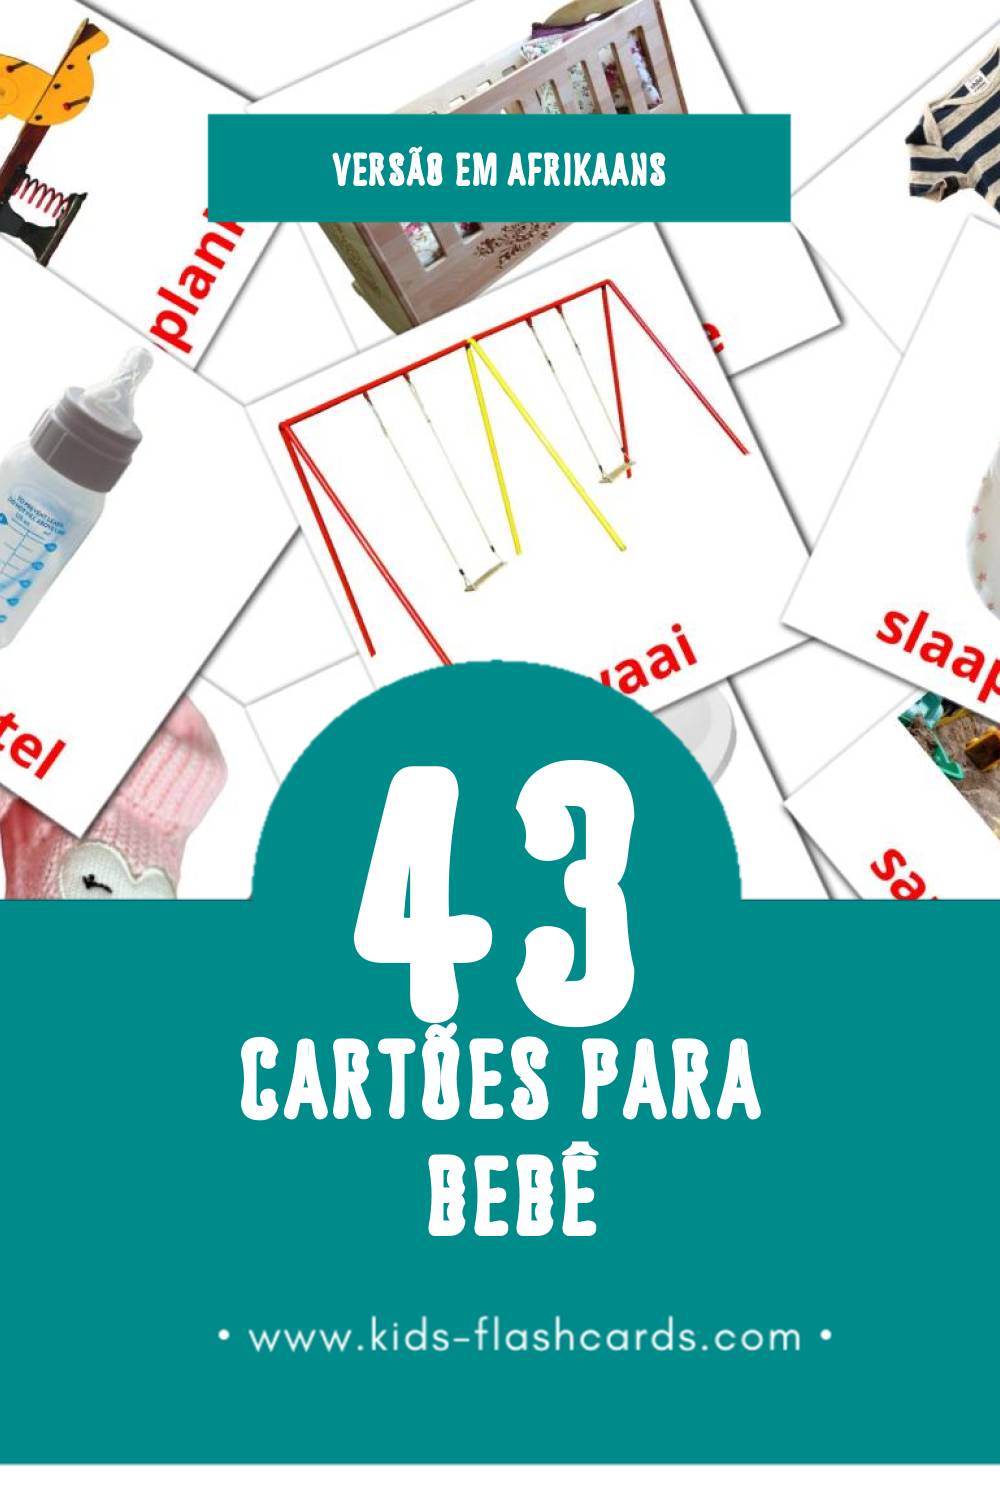 Flashcards de Baba Visuais para Toddlers (43 cartões em Afrikaans)